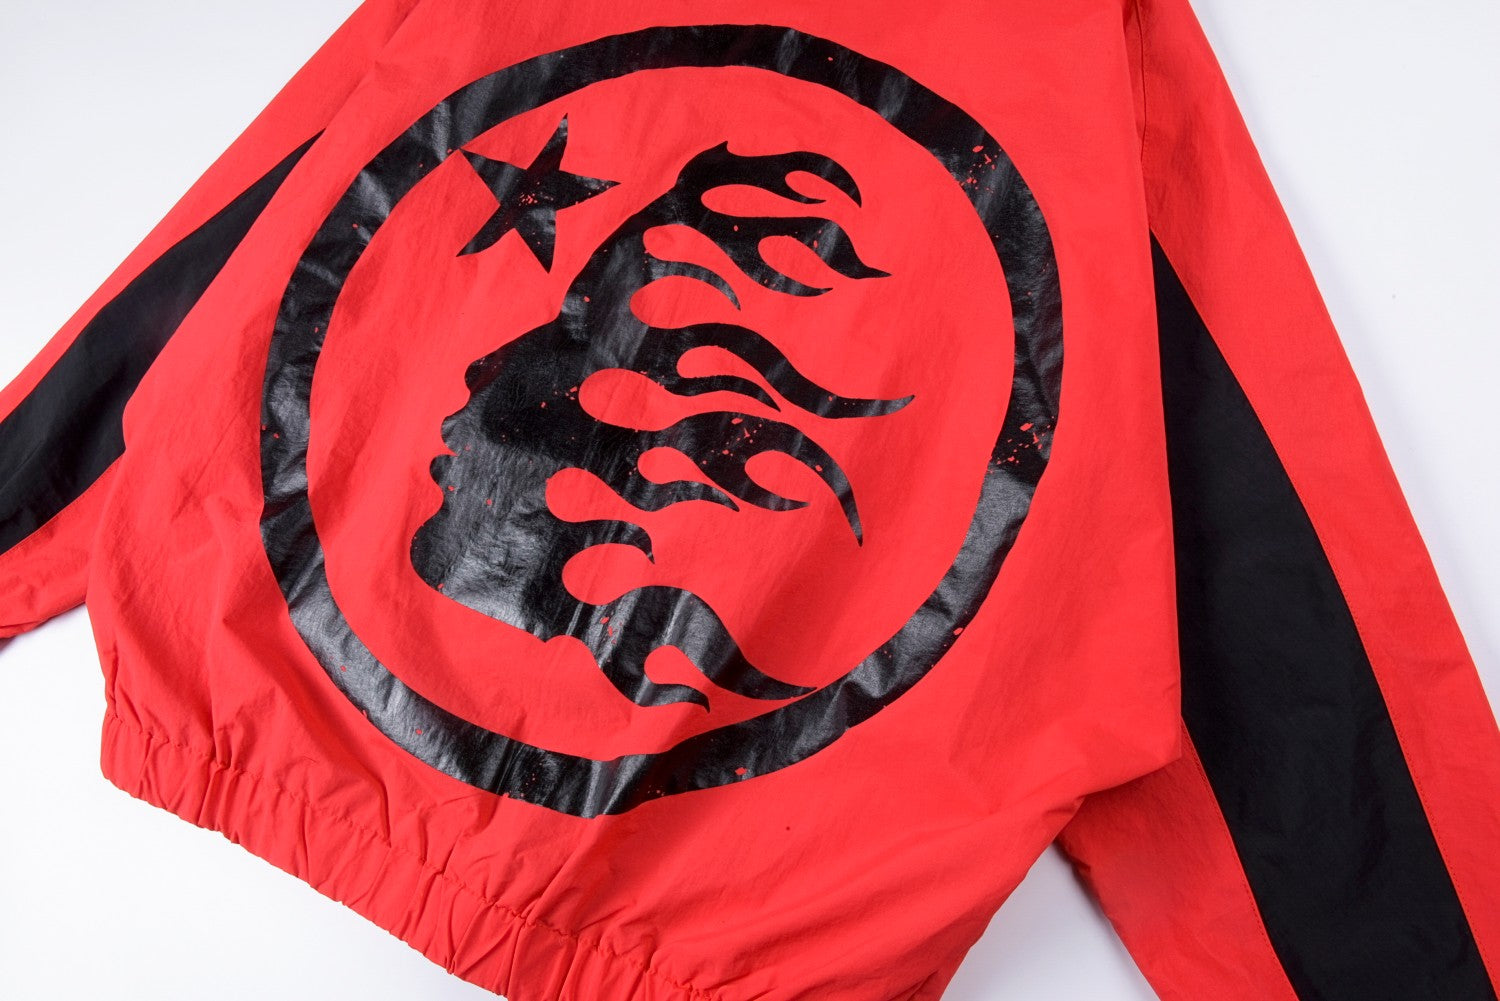 Hellstar Thriller Red Track Jacket